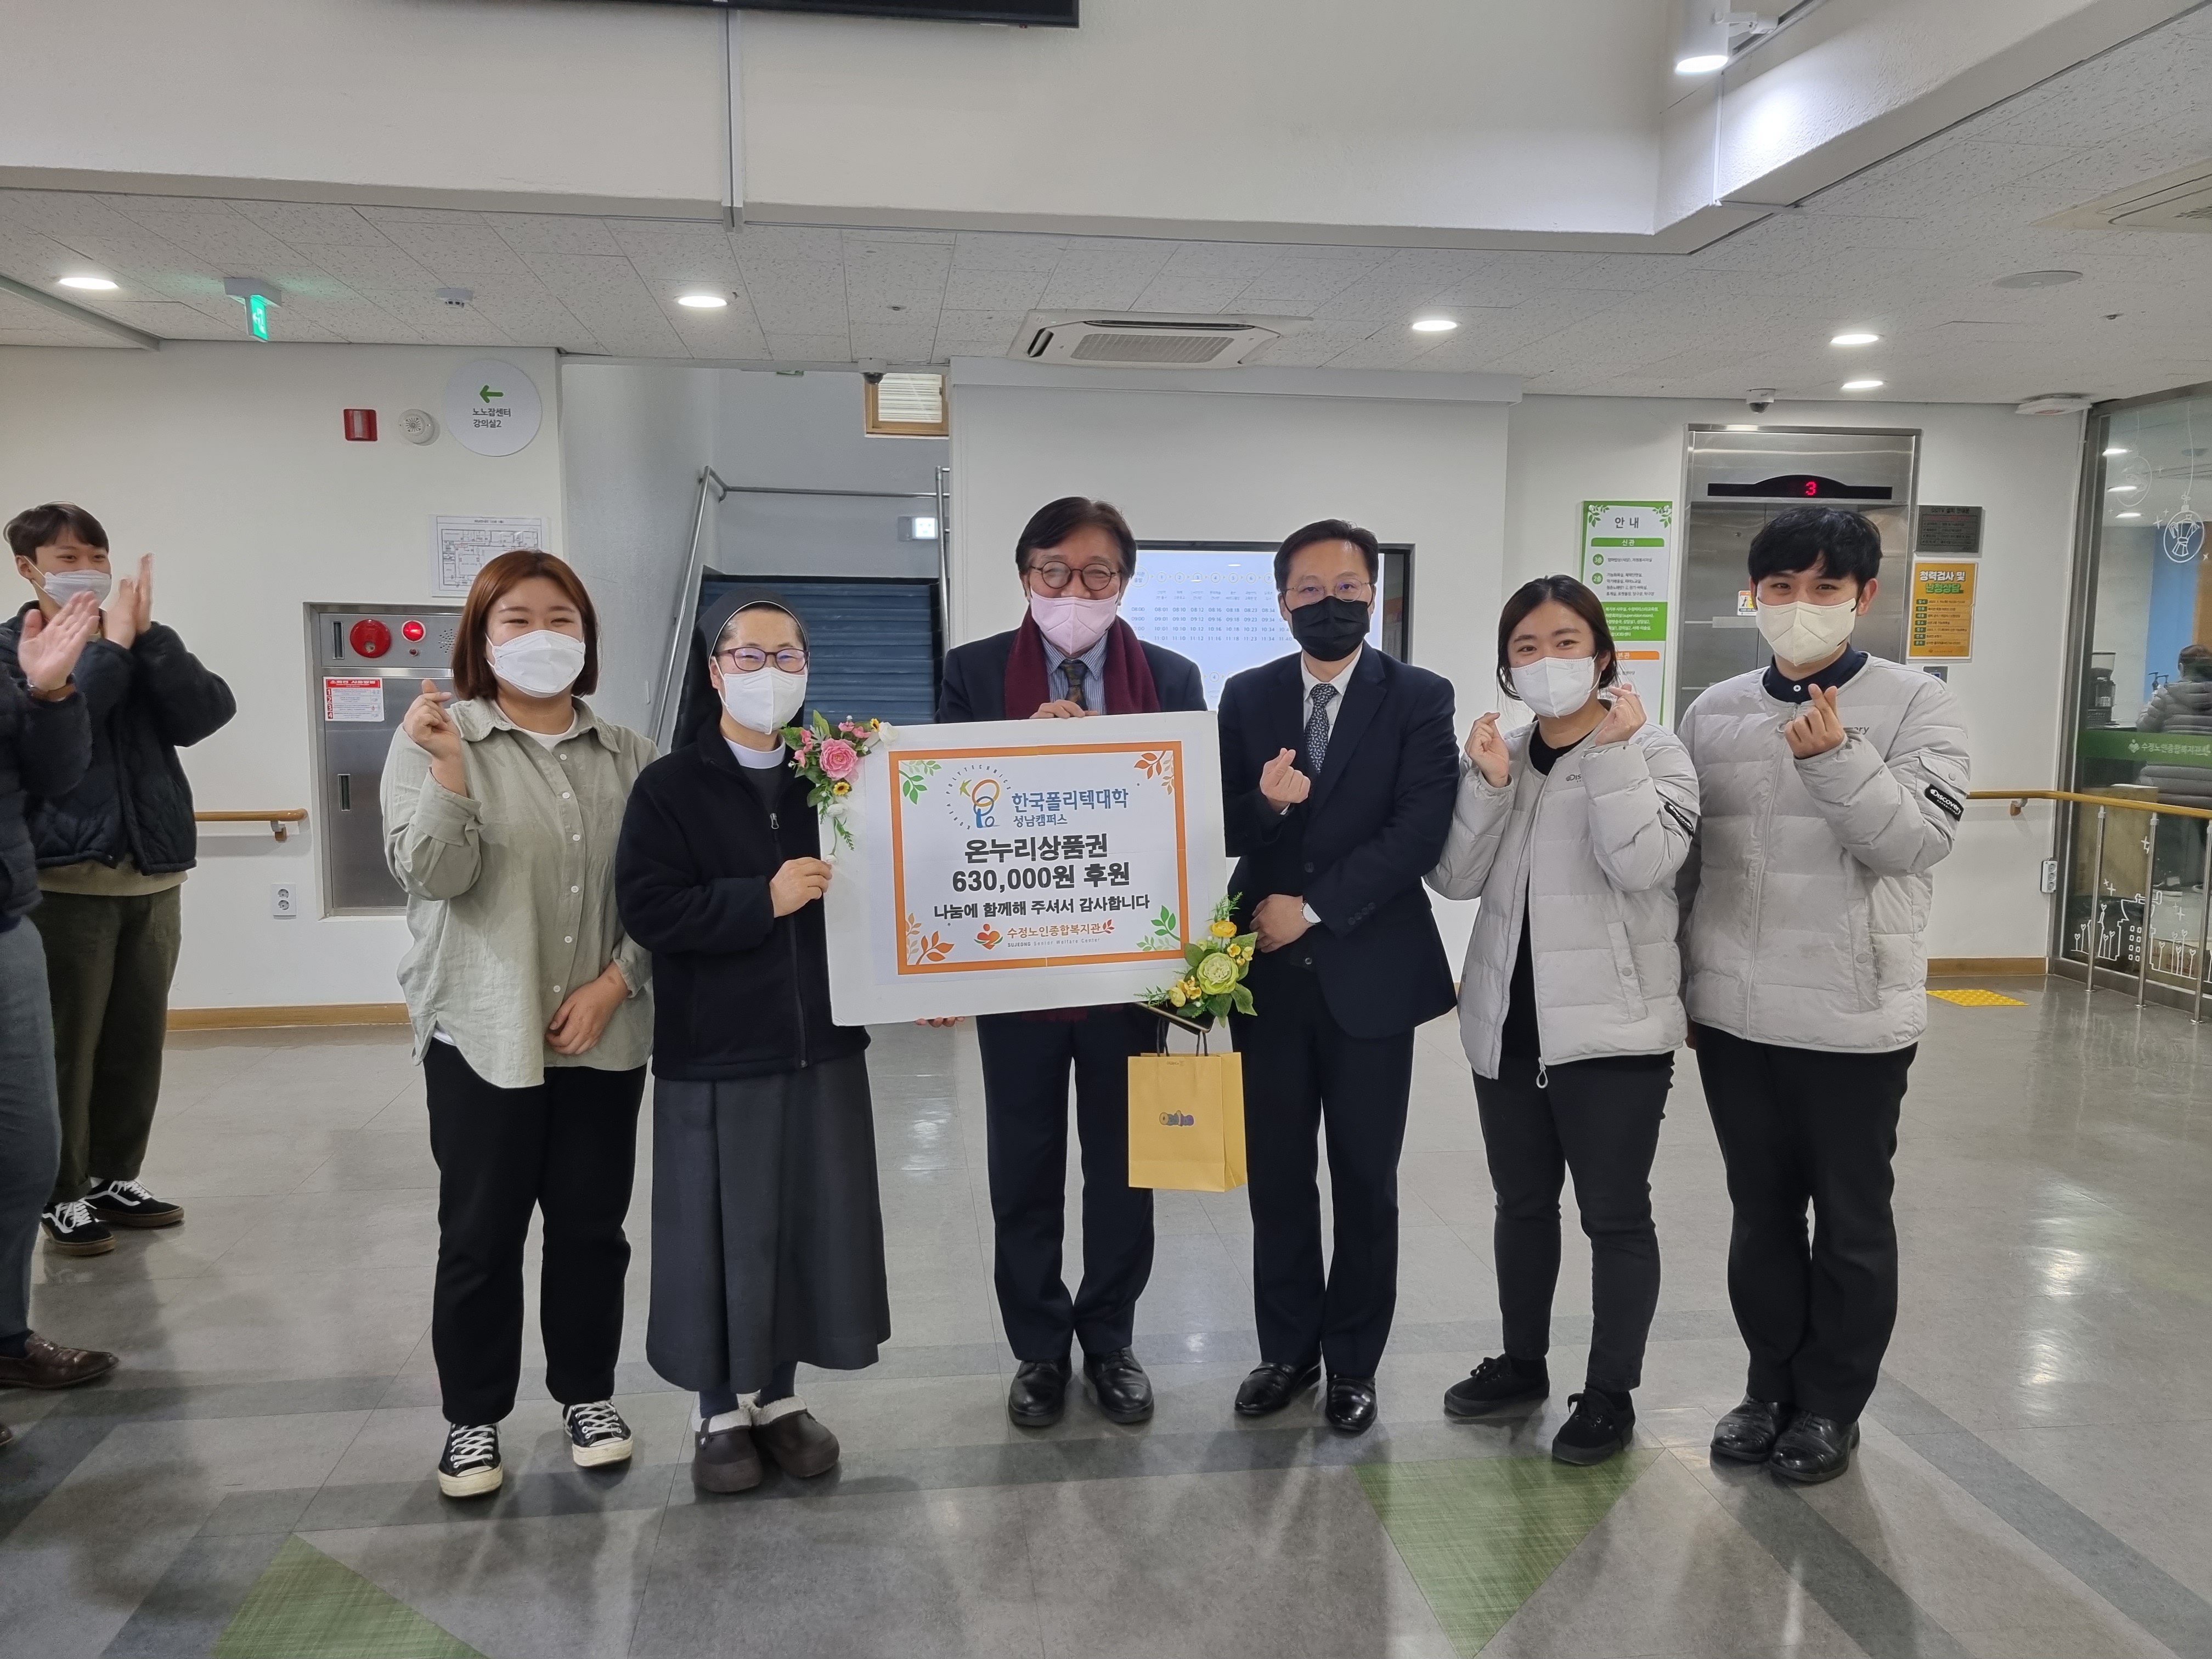 한국폴리텍대학 성남캠퍼스에서 온누리상품권 630,000원을 후원해 주셨습니다!